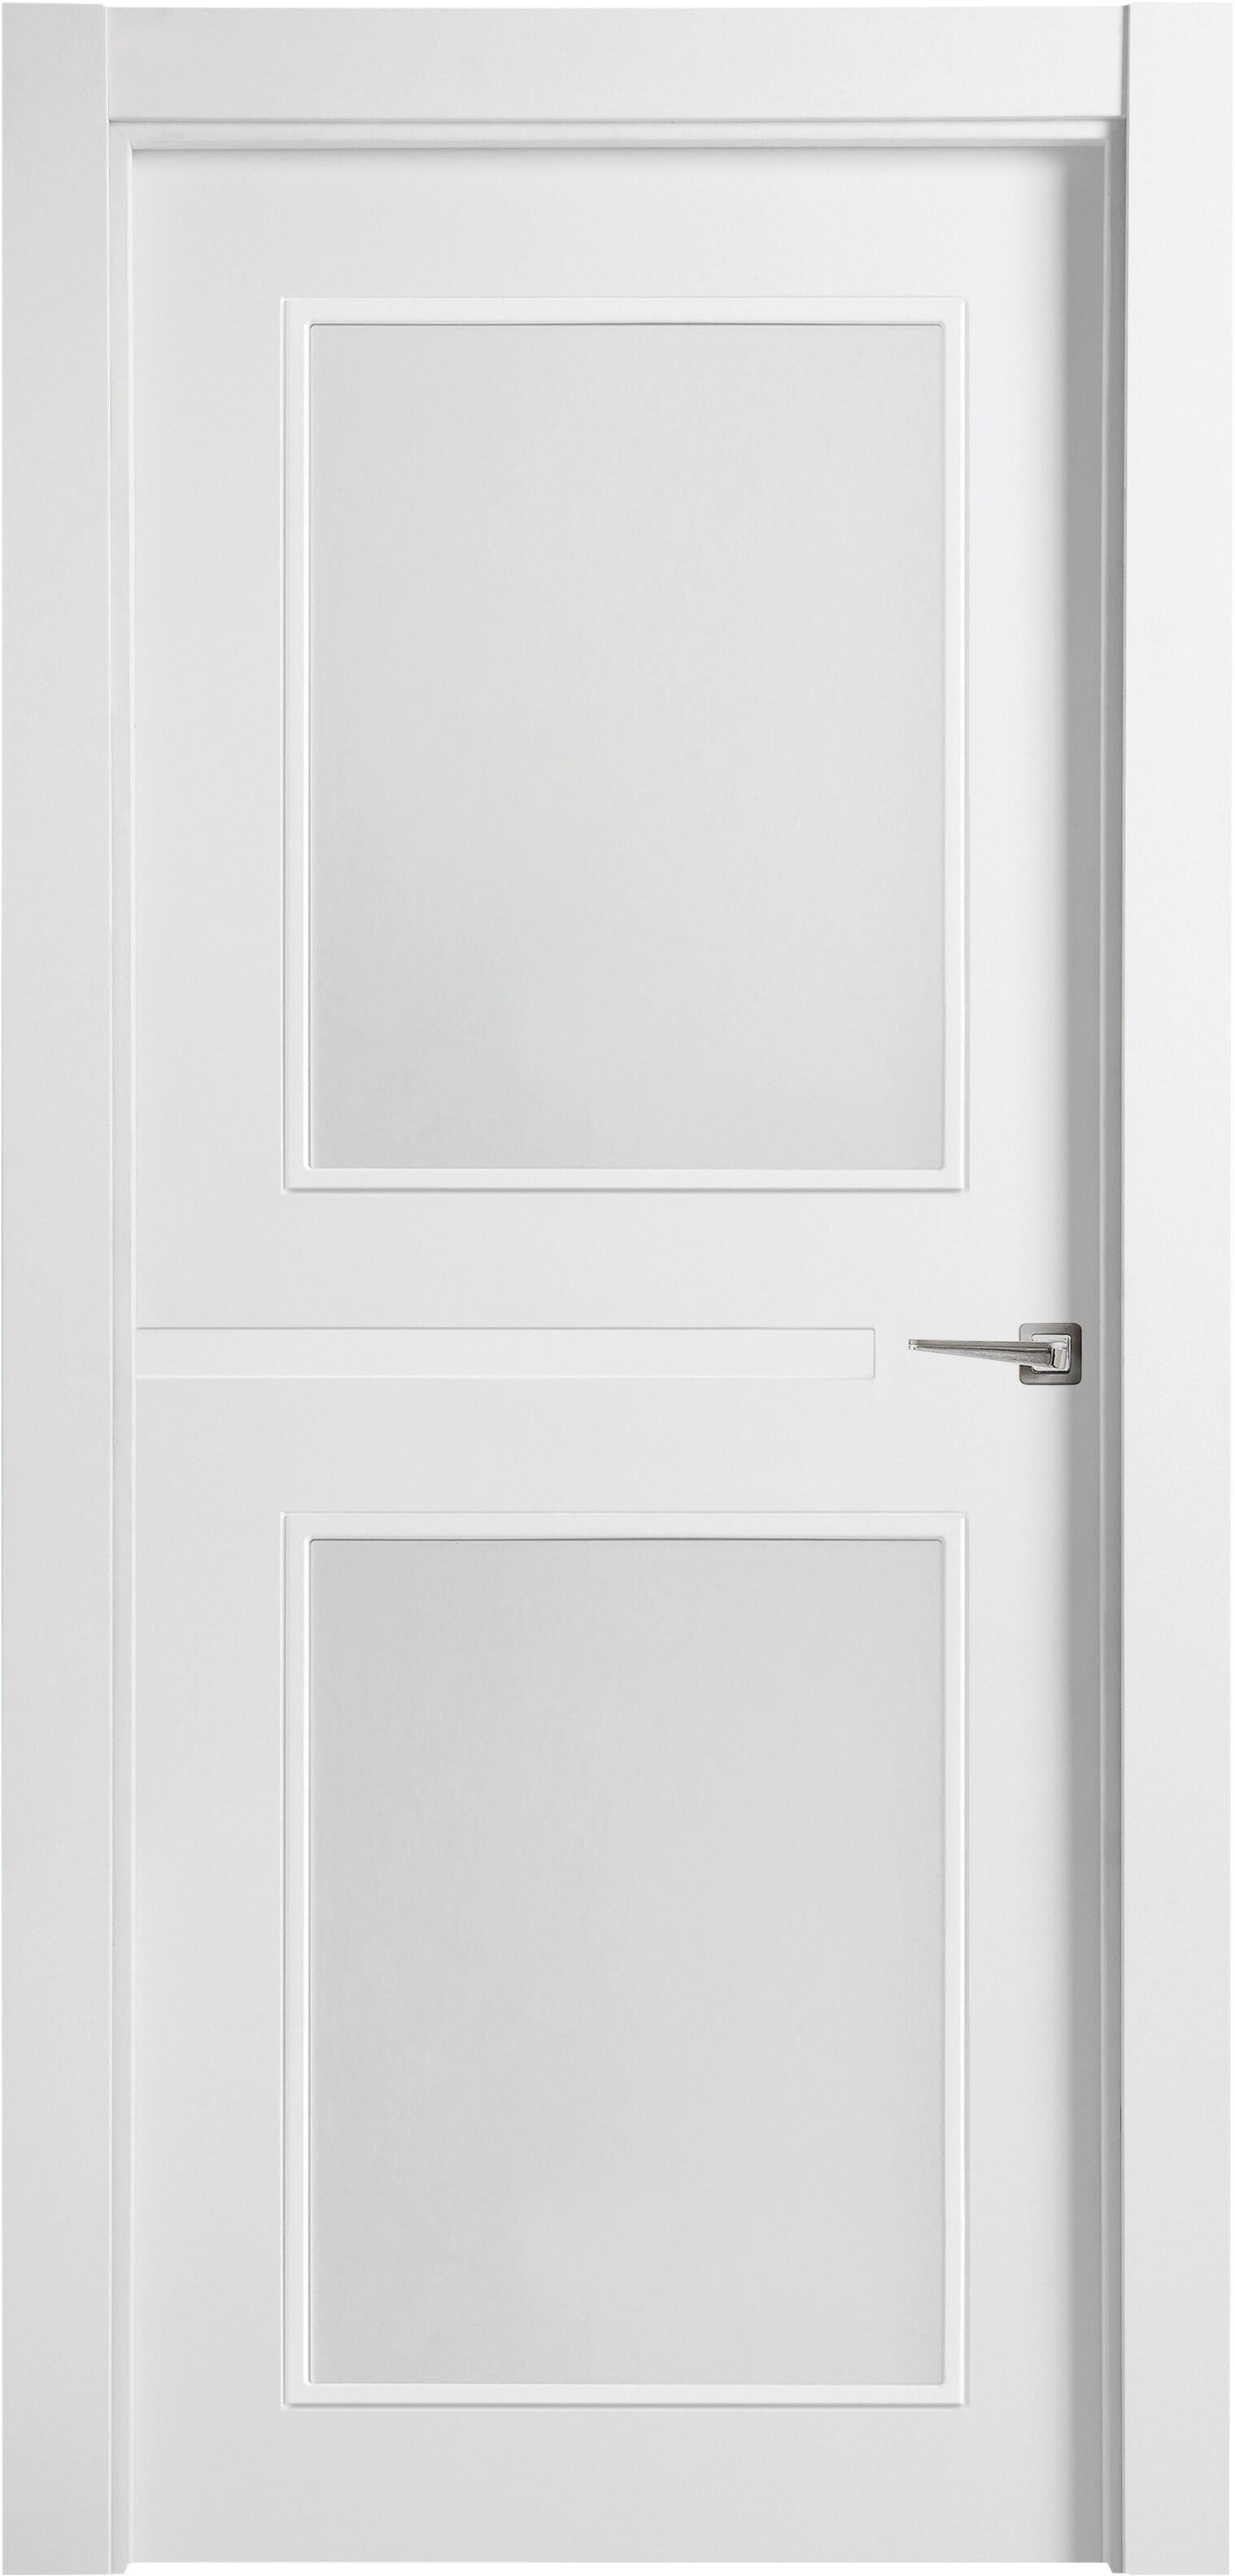 Puerta denver blanco apertura izquierda con cristal de 9x82,5cm